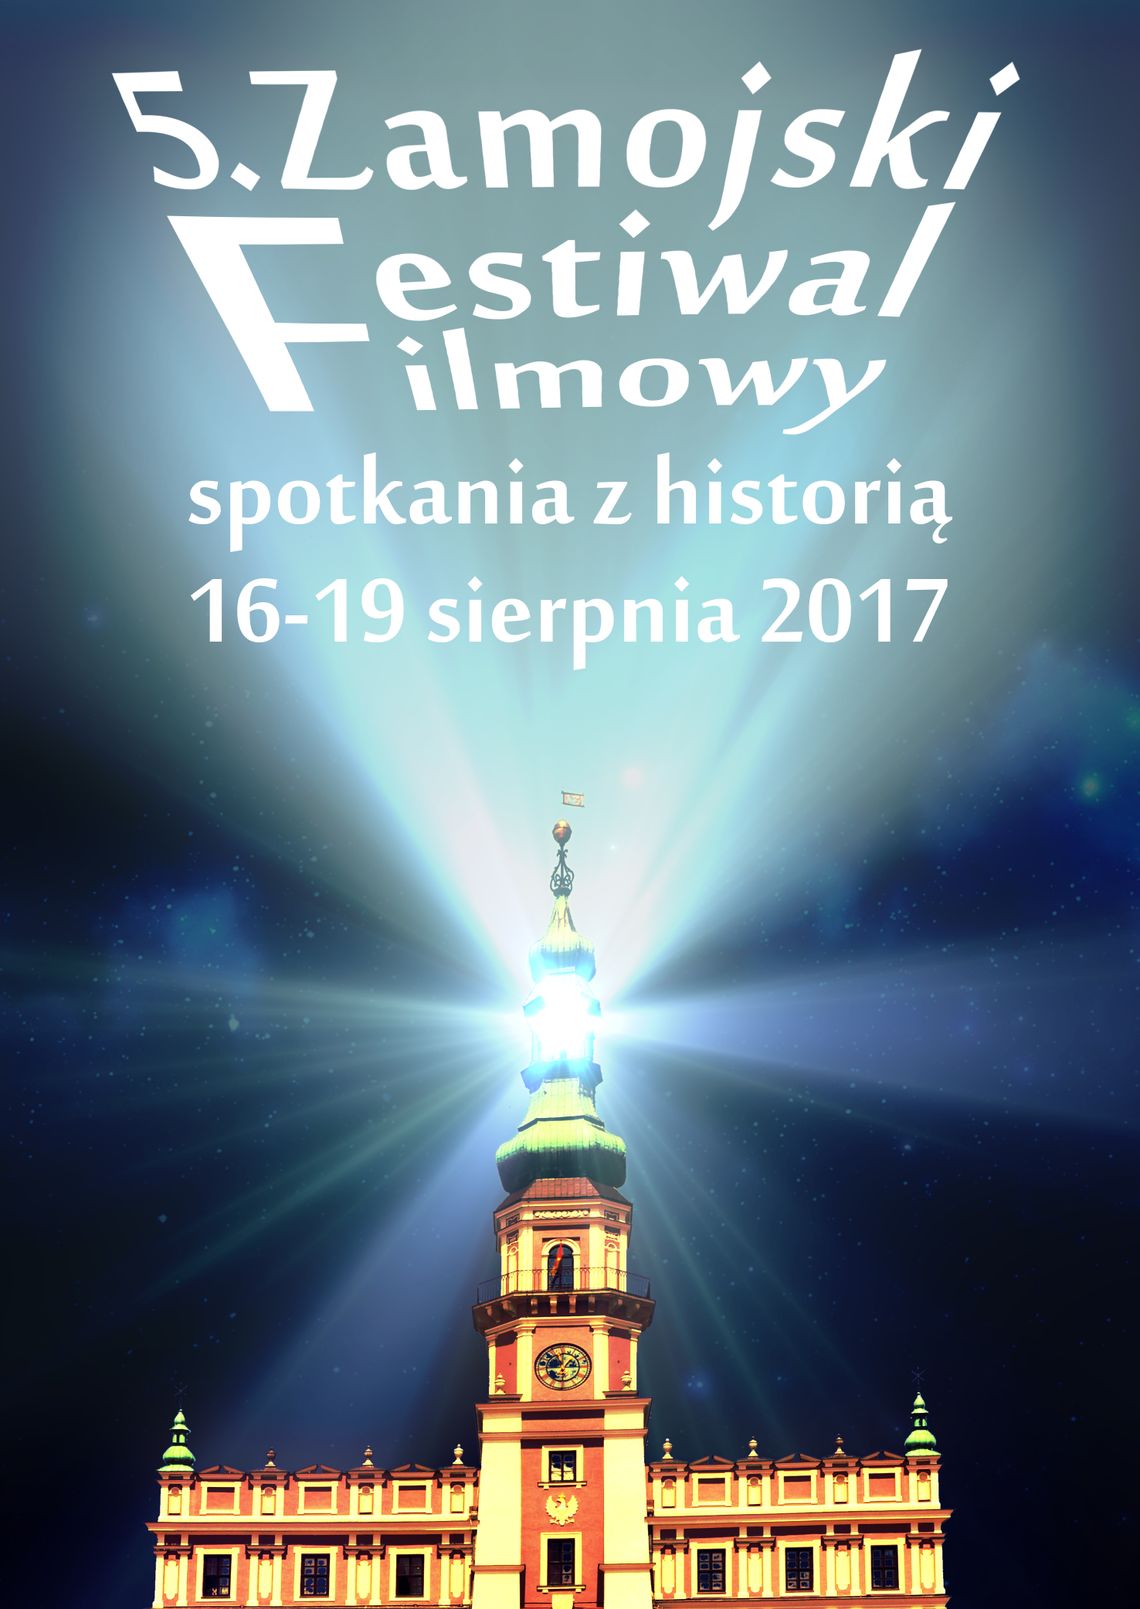 5. Zamojski Festiwal Filmowy „Spotkania z historią” (PEŁNY PROGRAM)